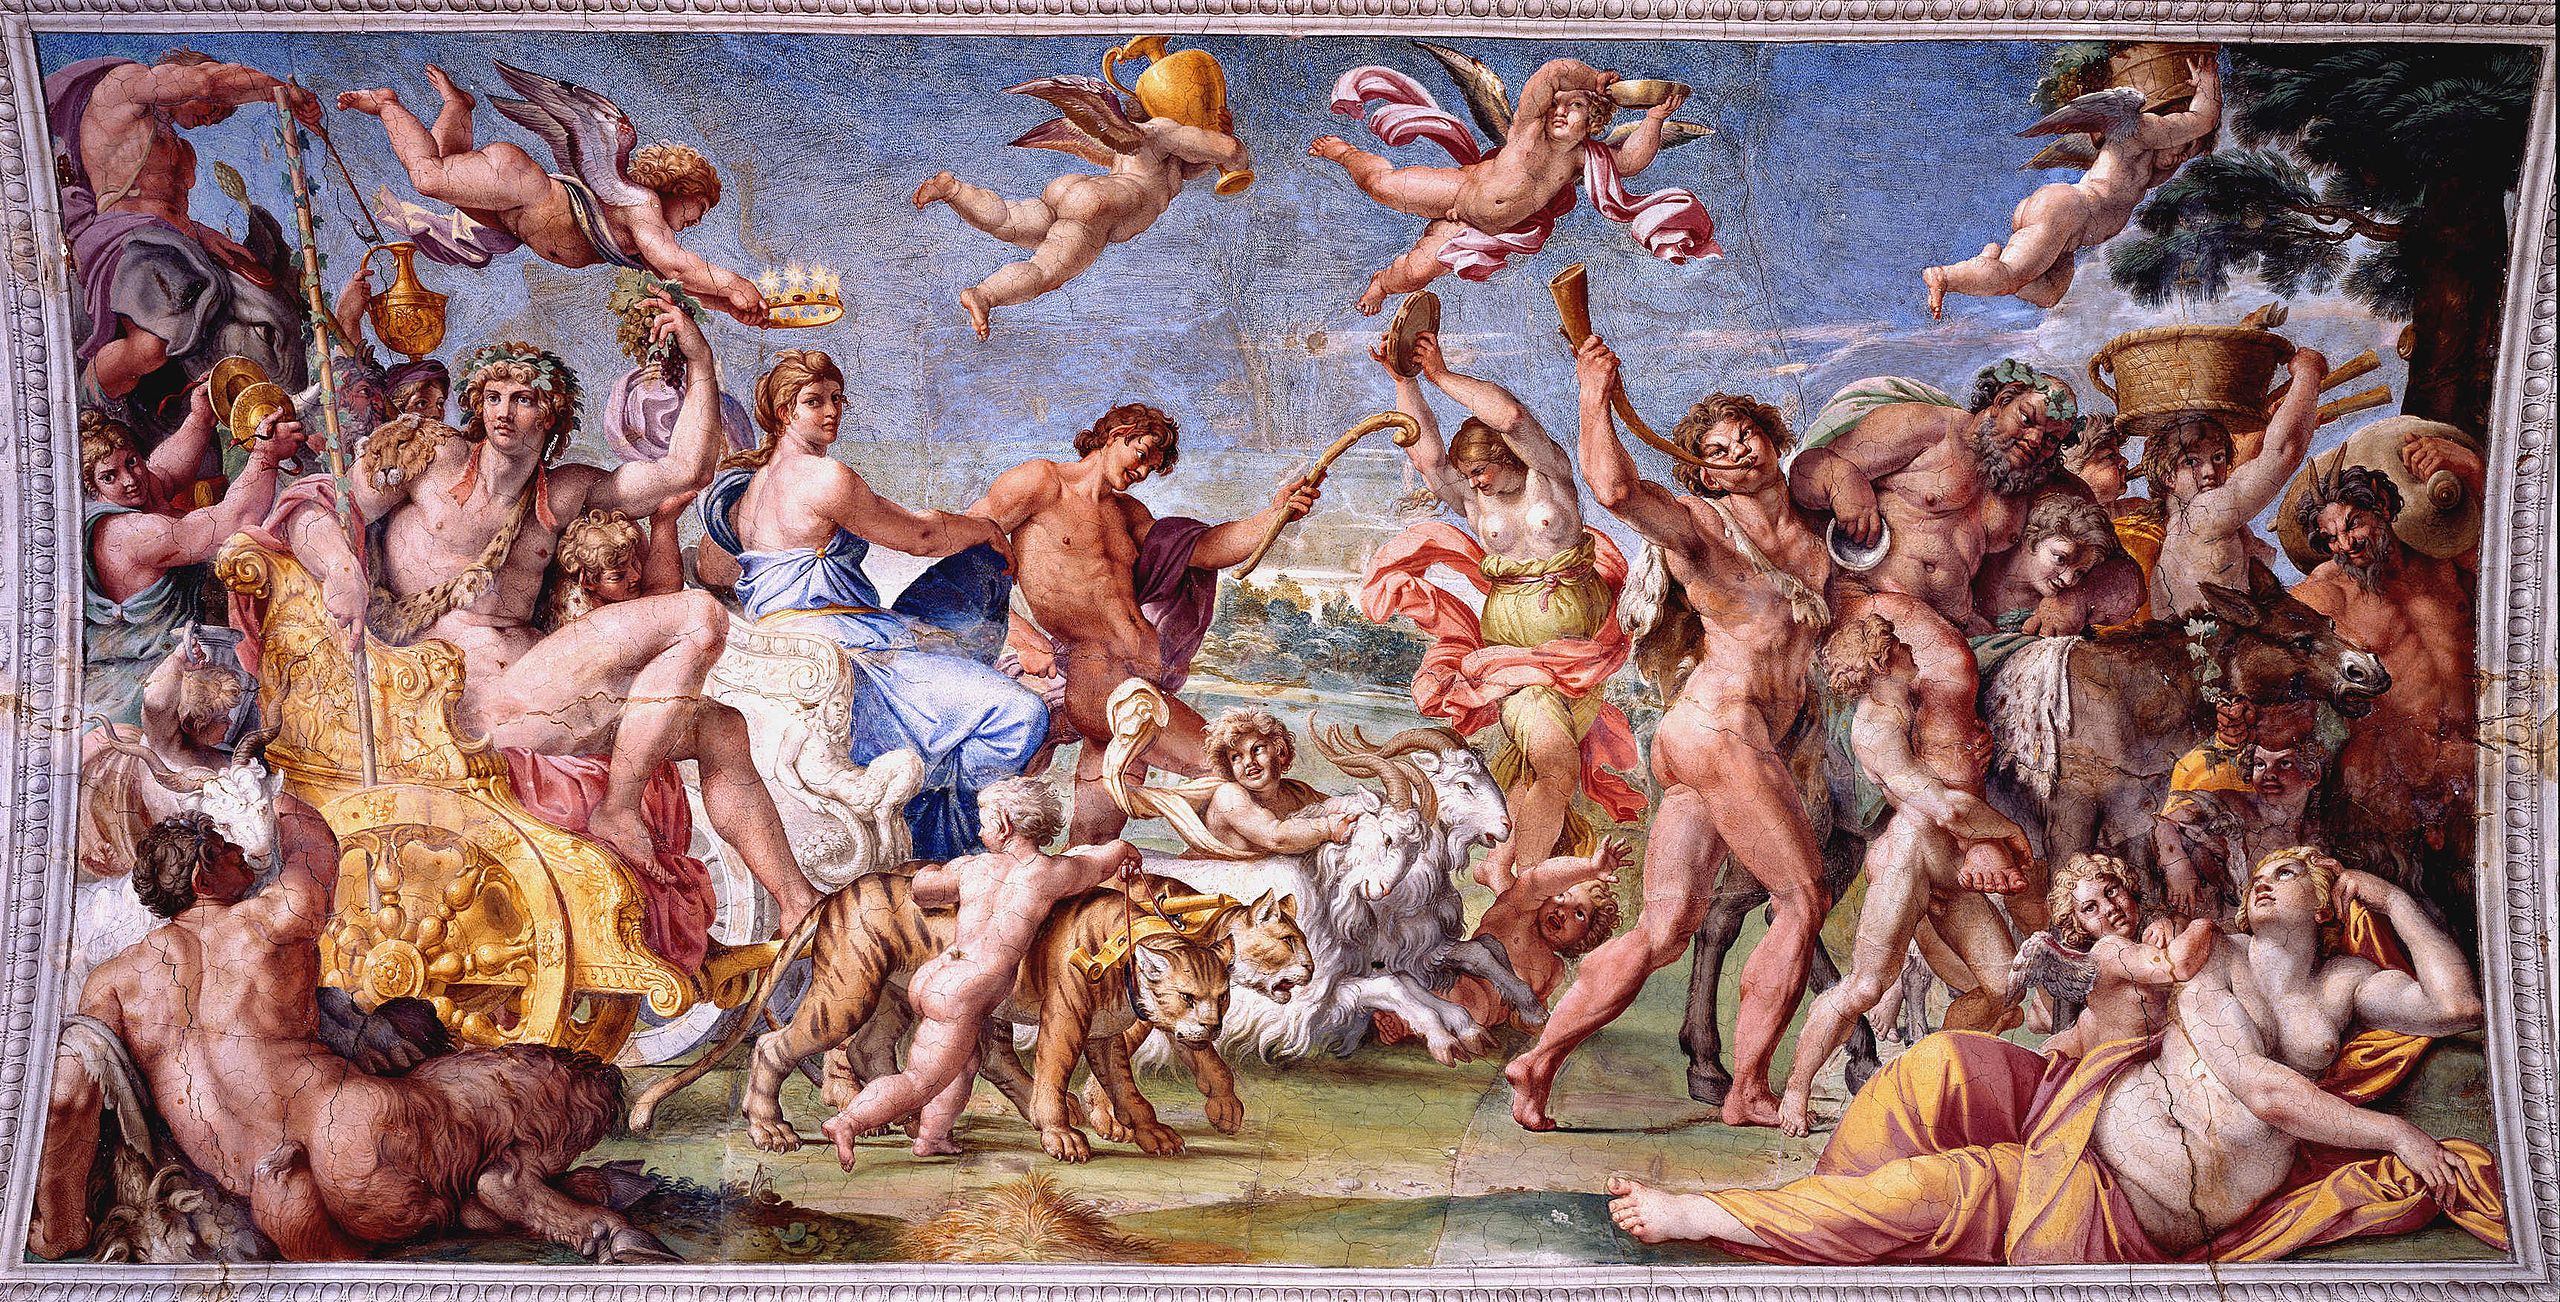 Der Triumph von Bacchus und Ariadne, Annibale Caracchi, Fresko, 1600, Palazzo Farnese, Rom

ART & WINE MAGAZINE